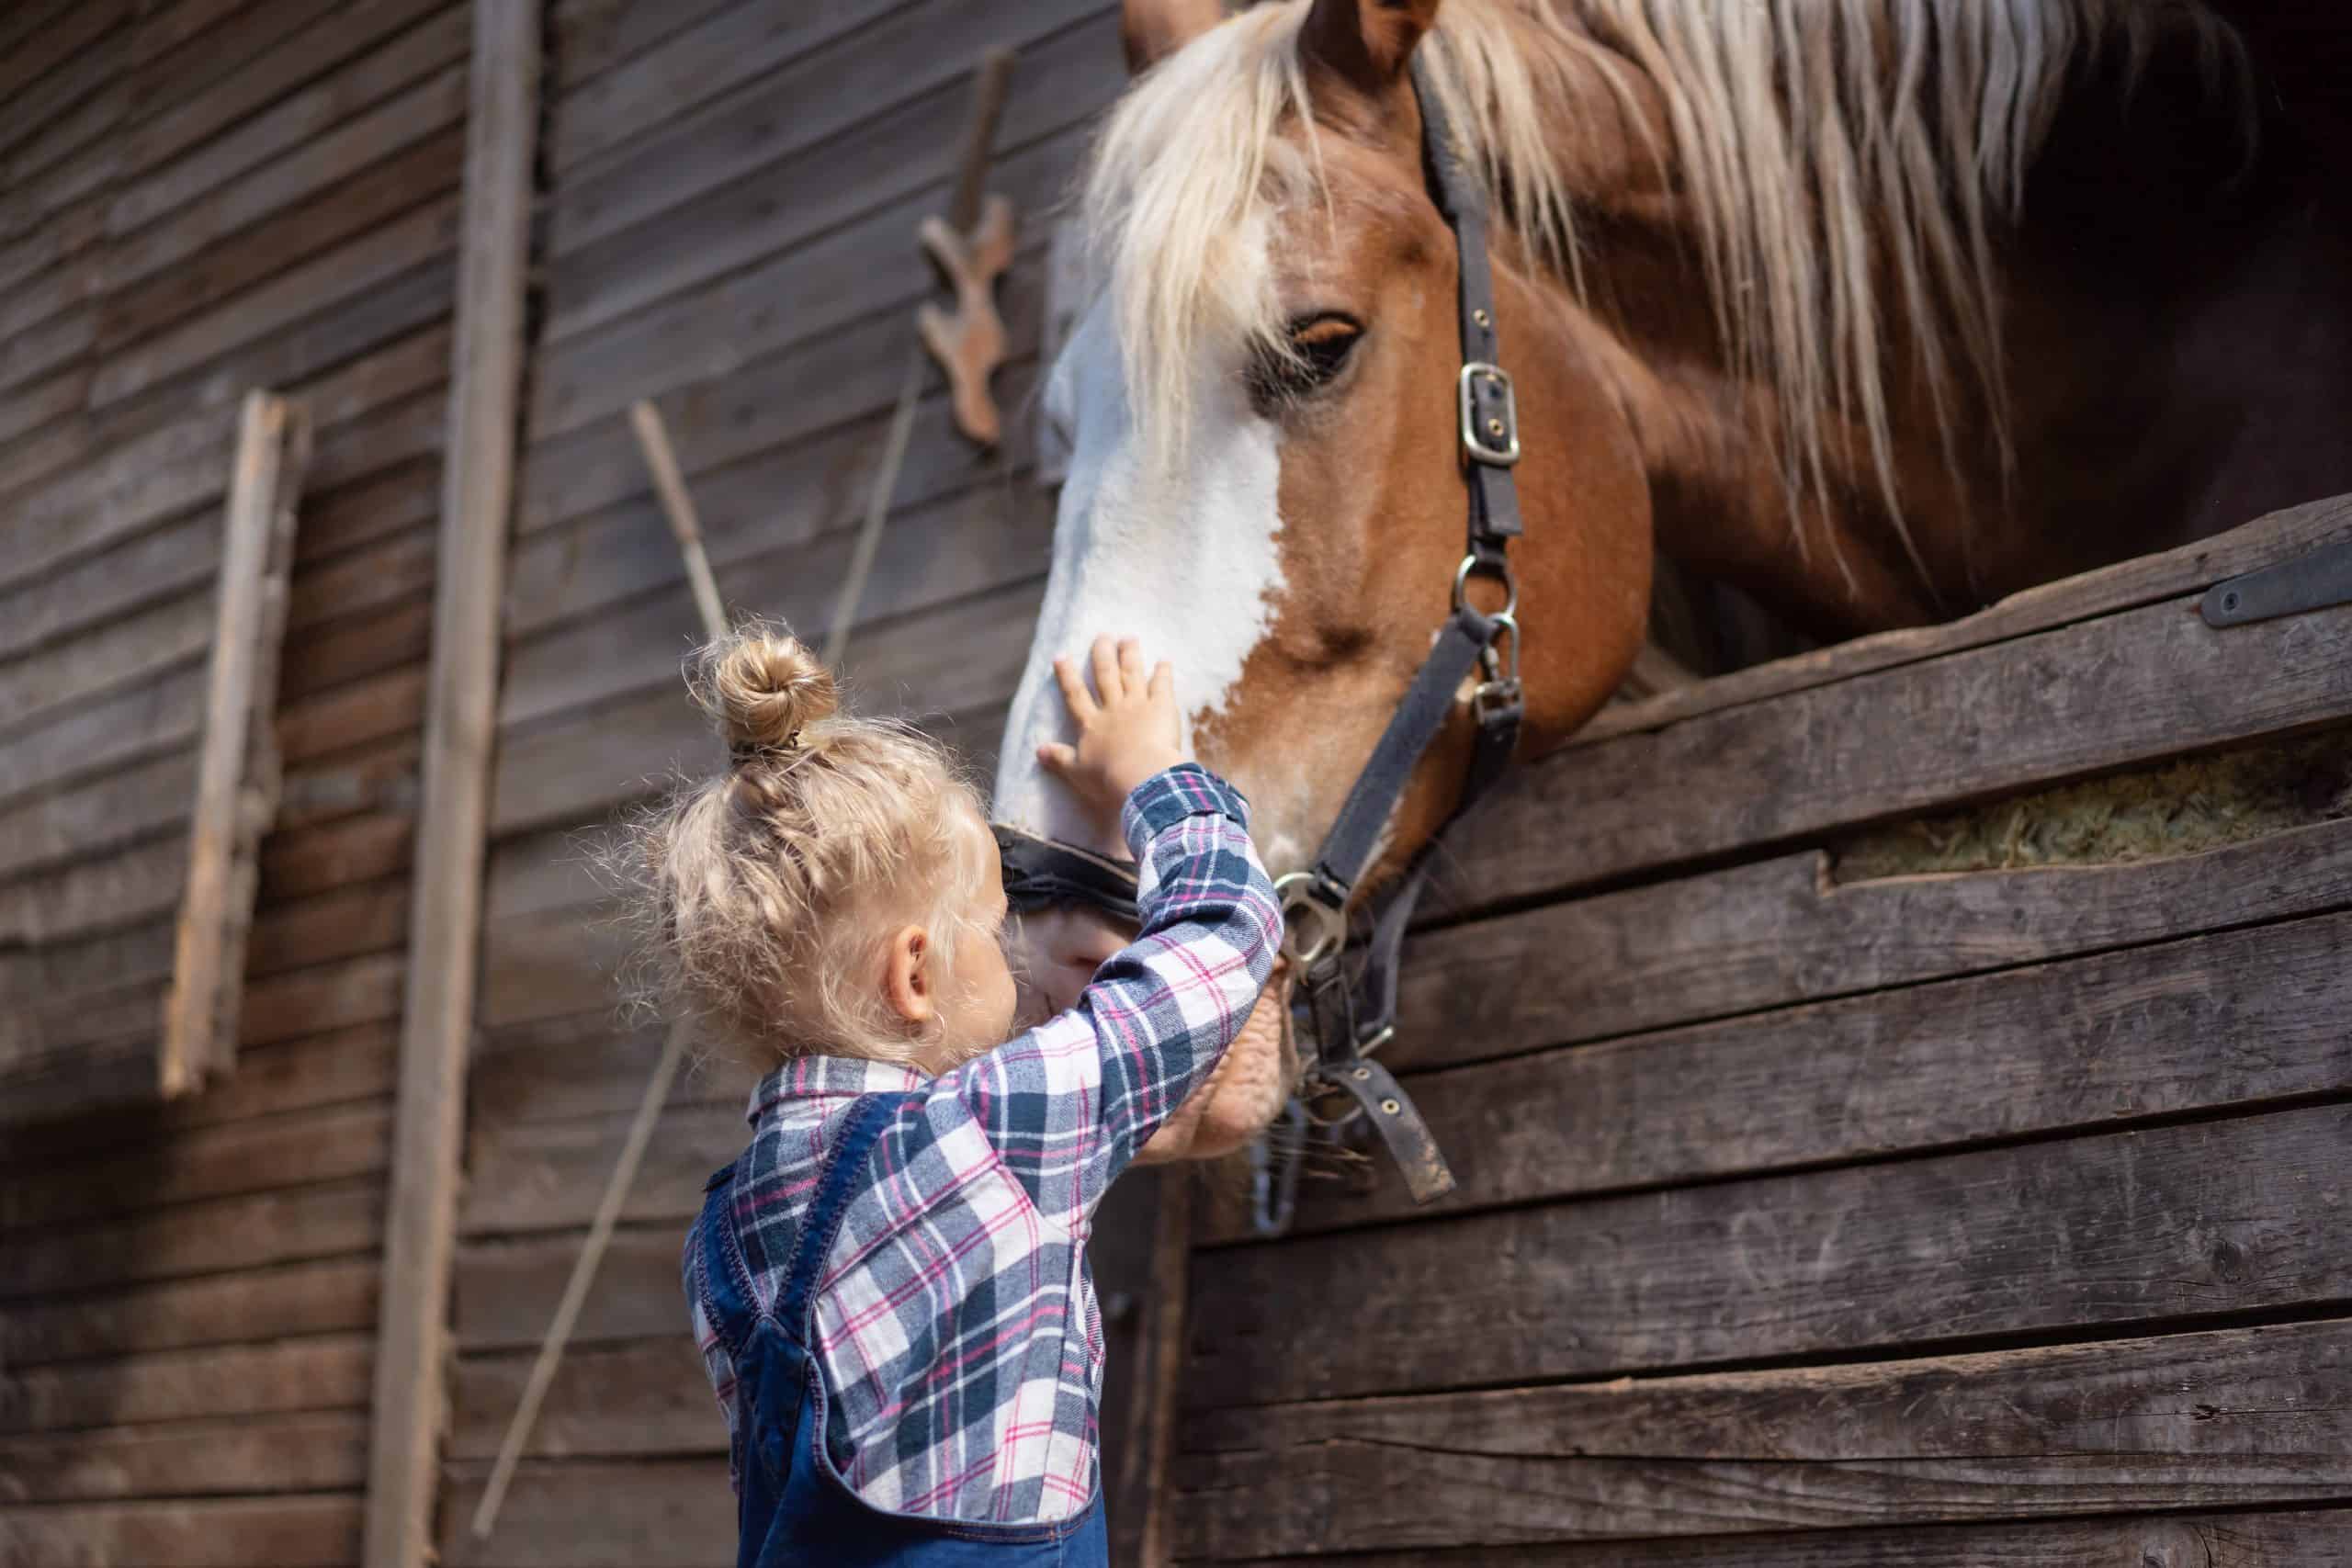 preteen kid palming big horse at farm